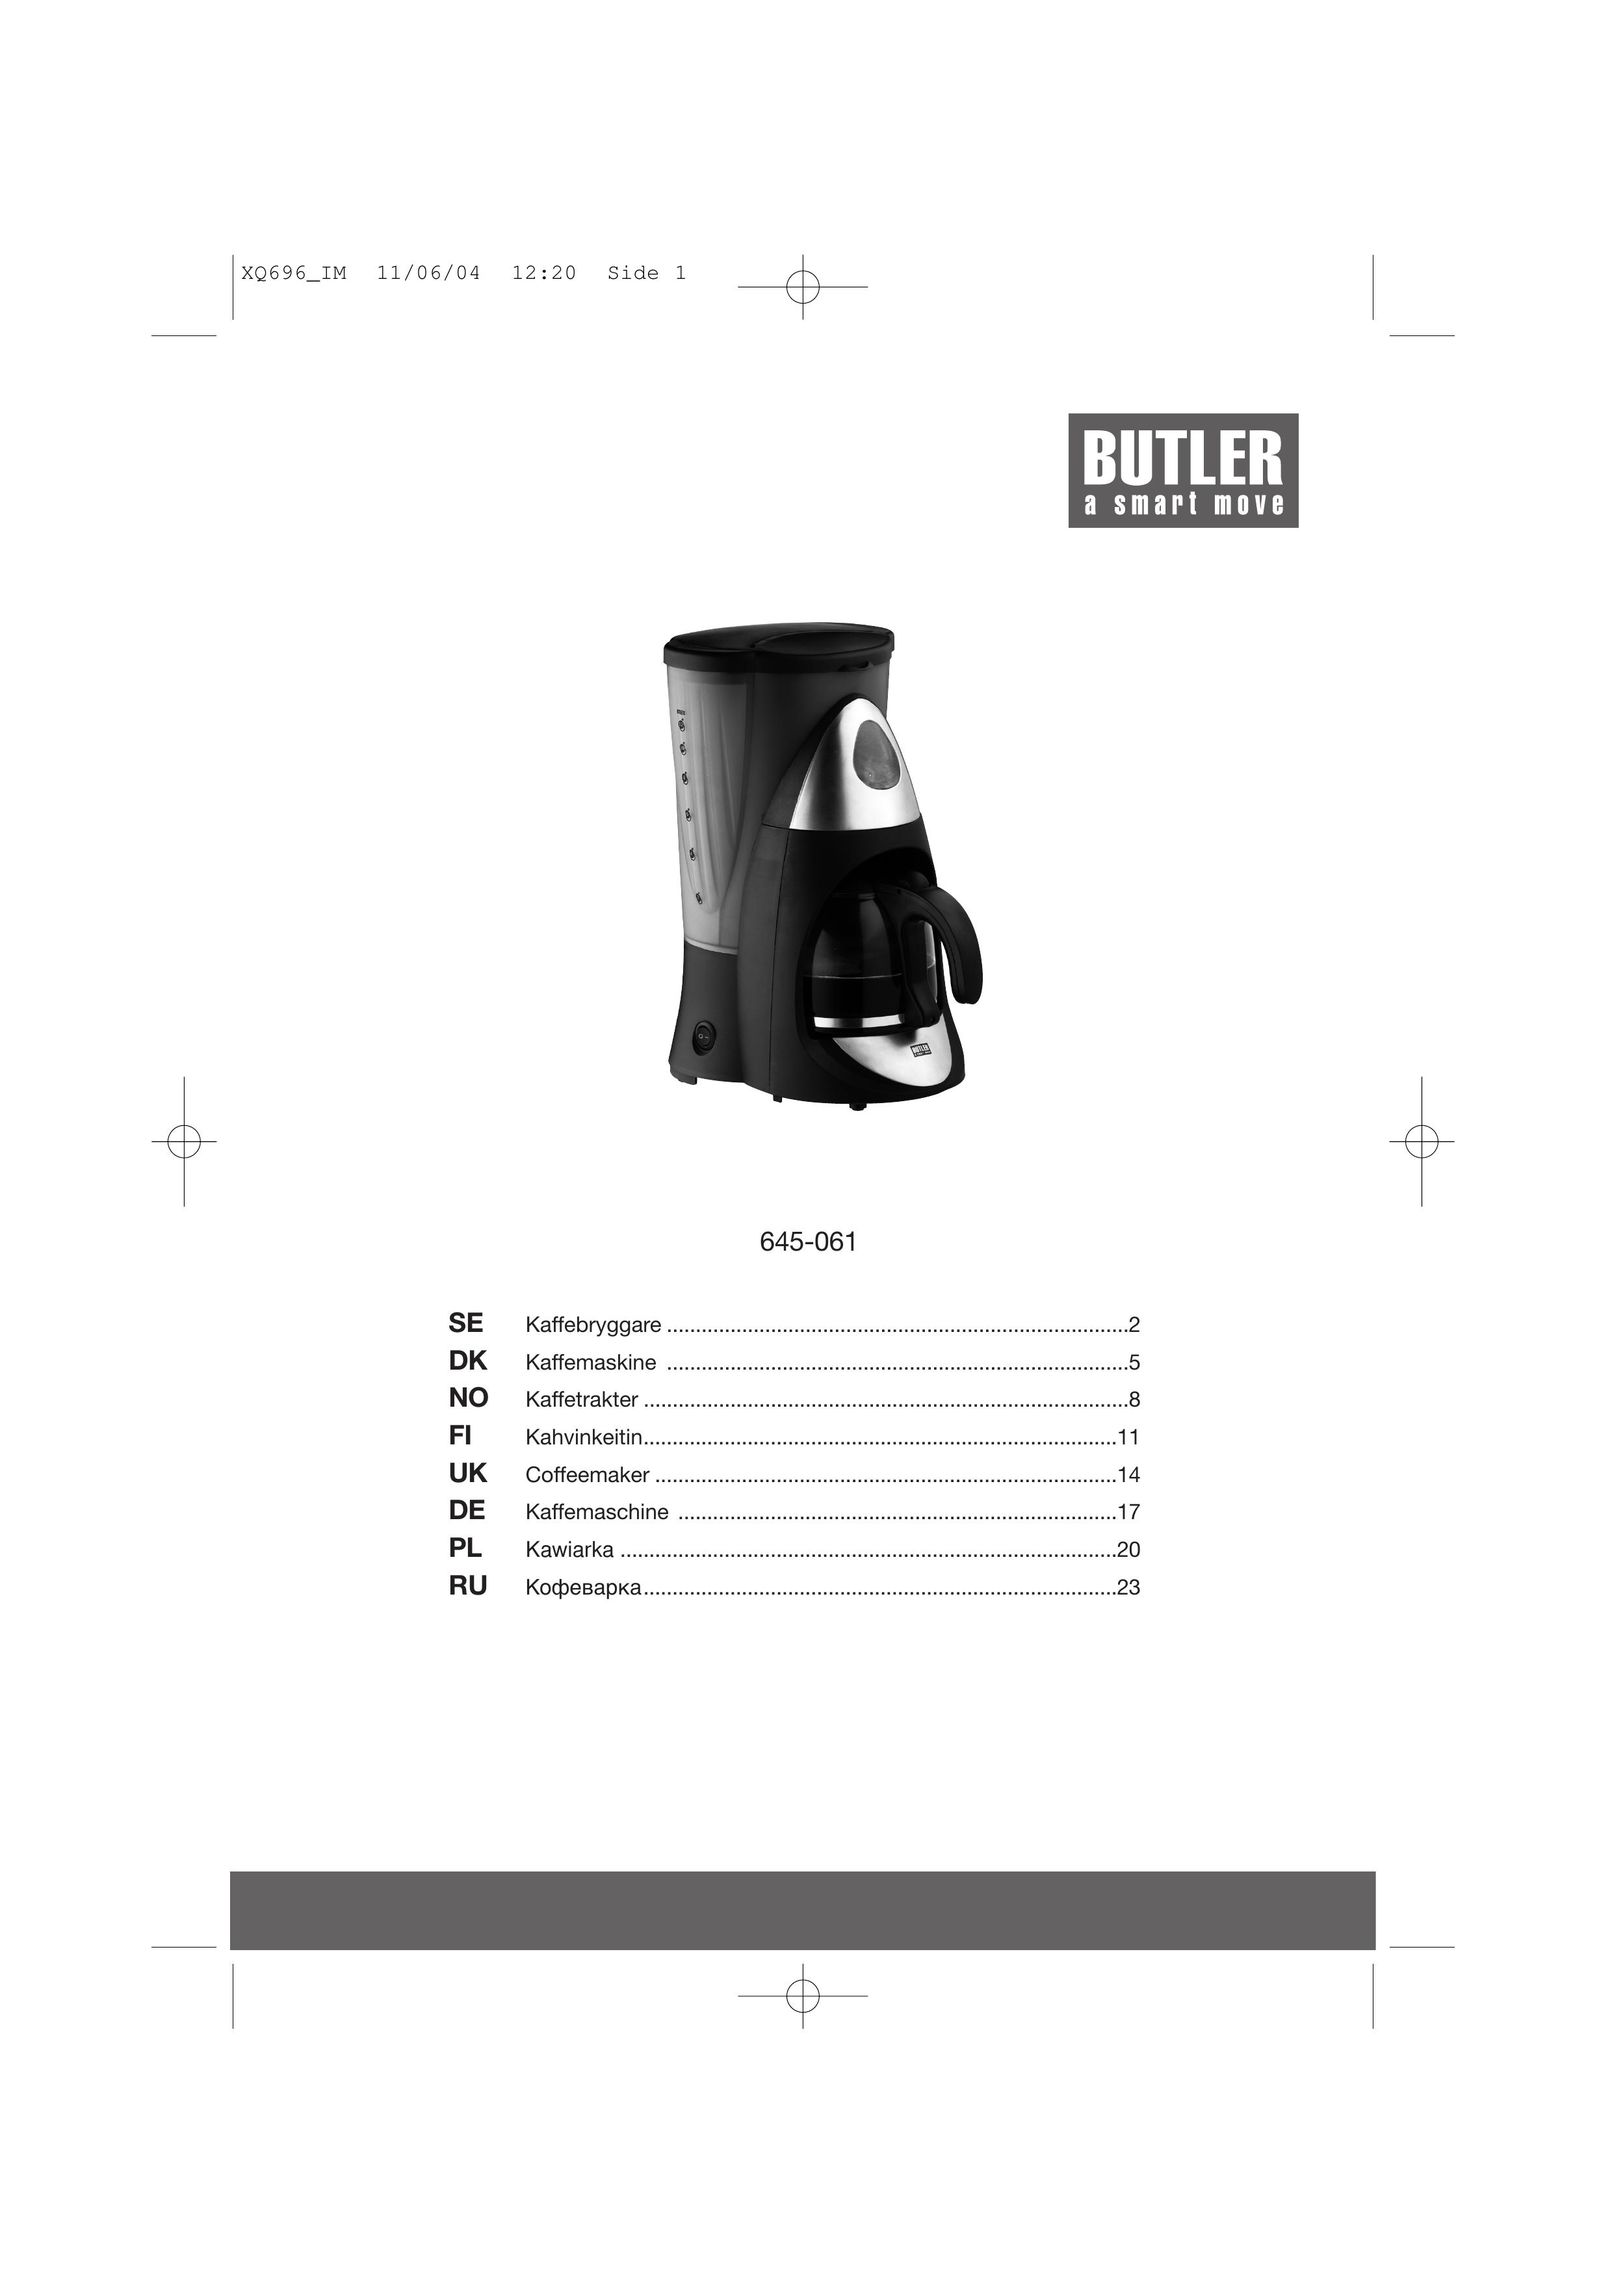 Butler 645-061 Coffeemaker User Manual